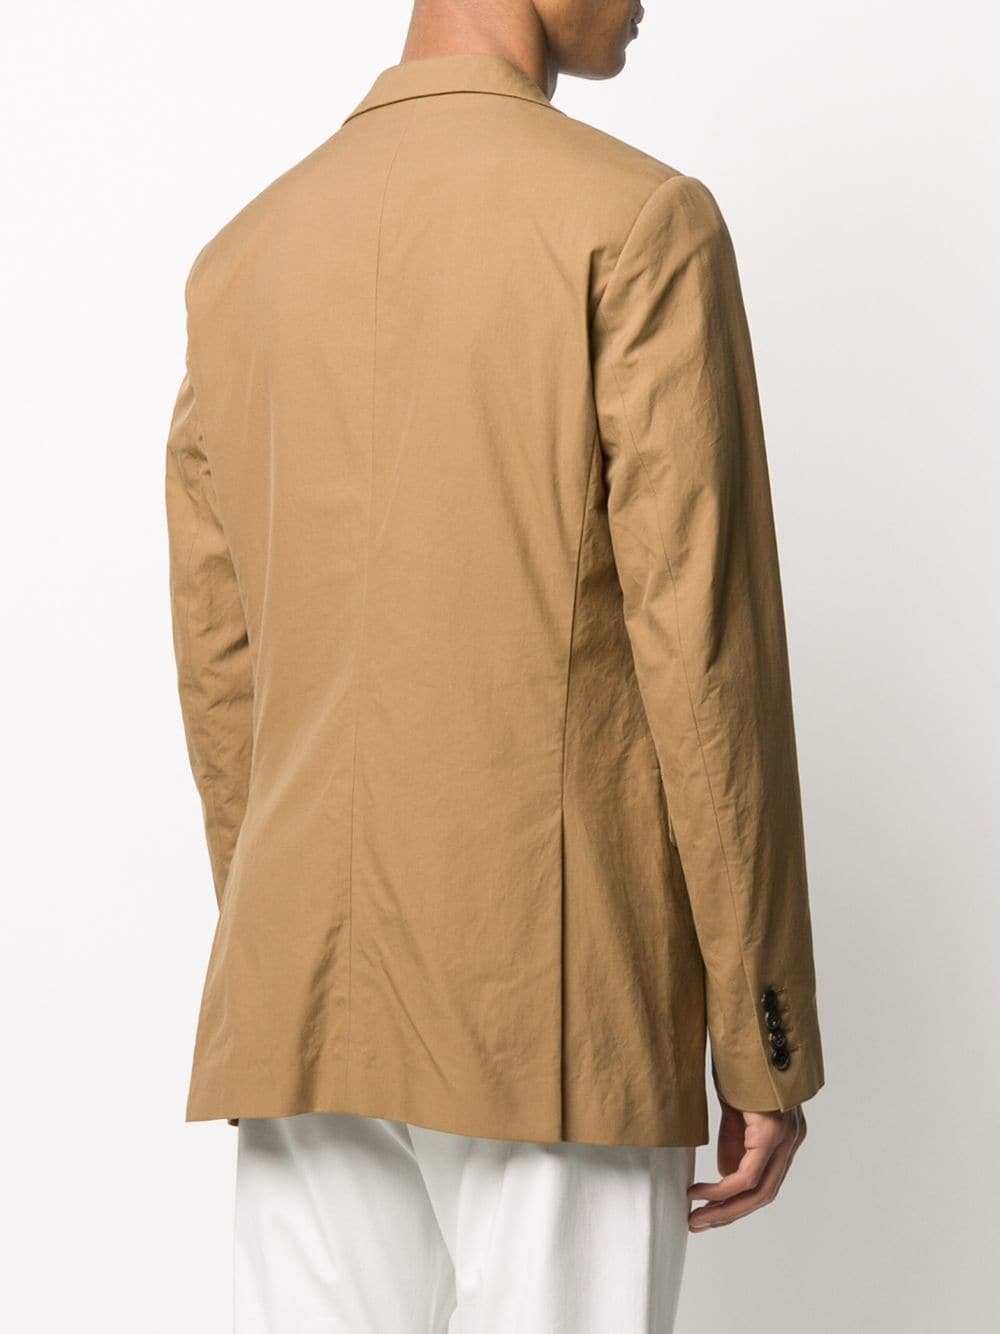 Dries Van Noten Man`s brown cotton jacket - 9